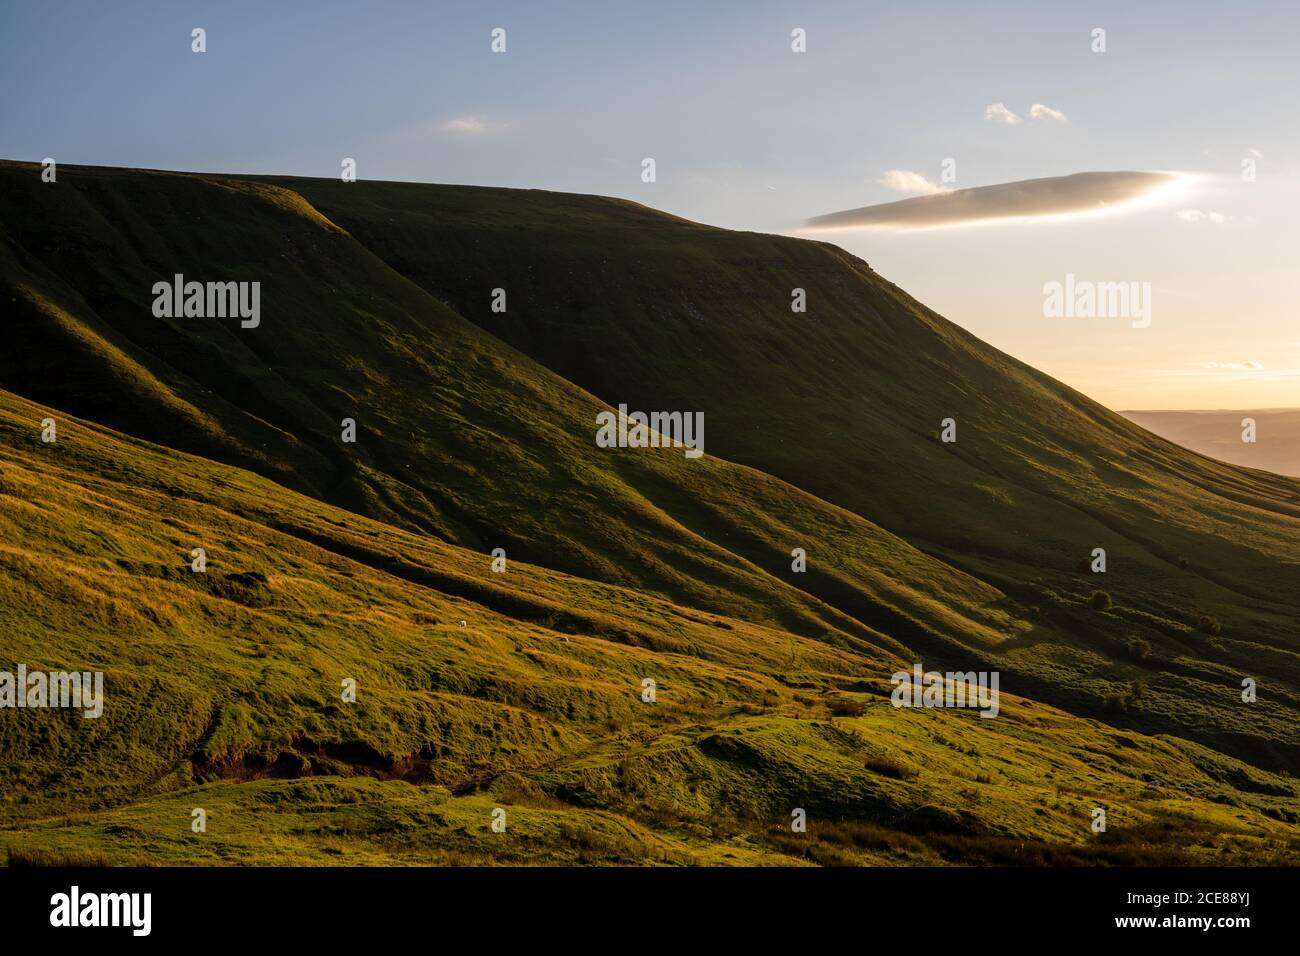 Schafe weiden in der Abendsonne an den Hängen des Twmpa-Berges, oder Lord Hereford's Knob, in den Black Mountains von Wales. Stockfoto